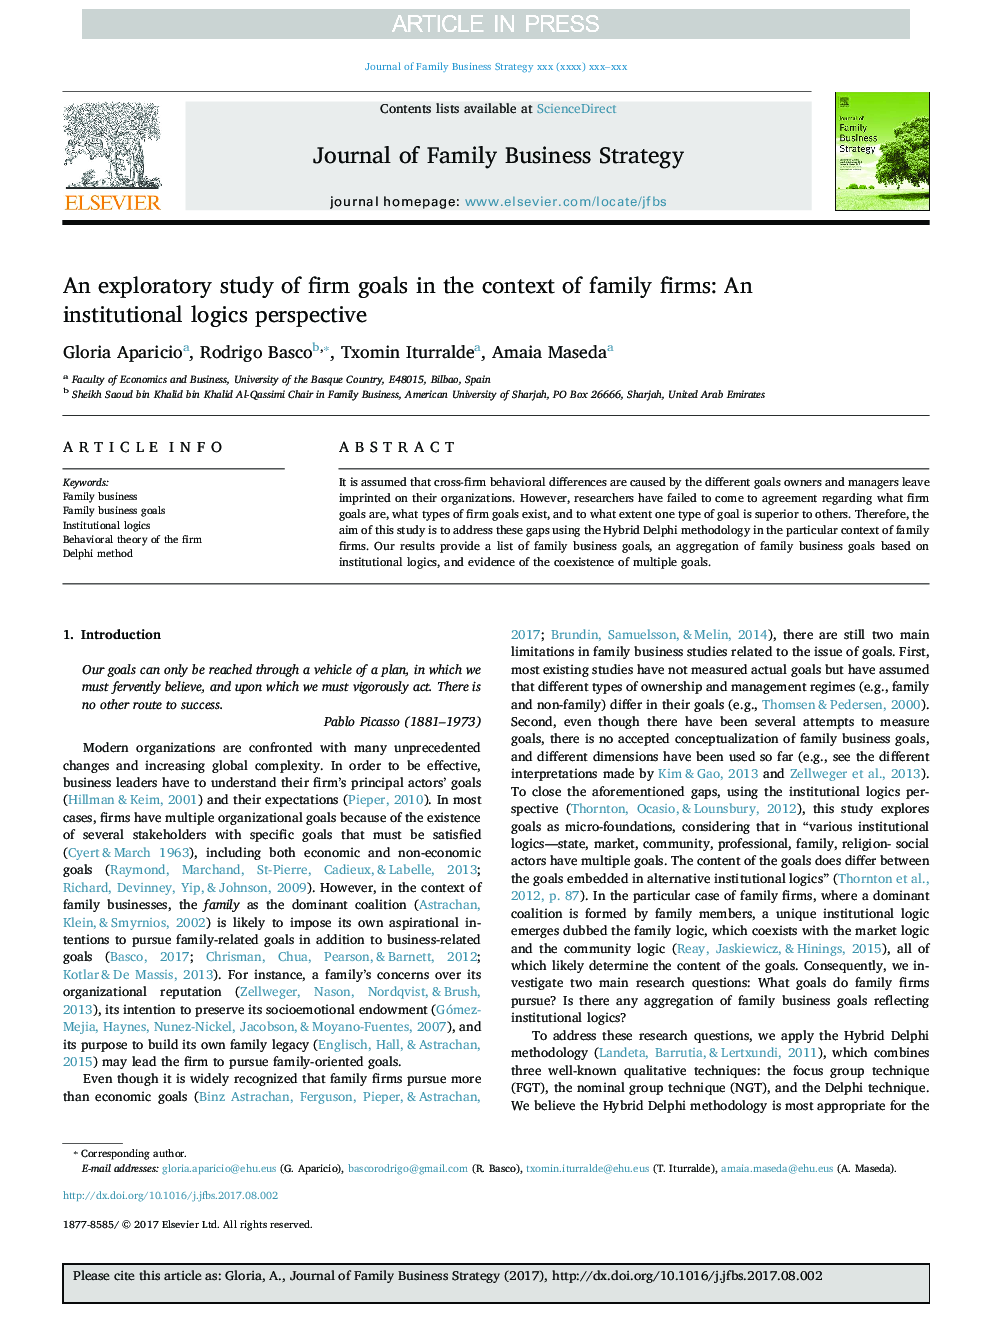 یک مطالعه اکتشافی از اهداف شرکت در زمینه شرکت های خانوادگی: چشم انداز منطق نهادی 